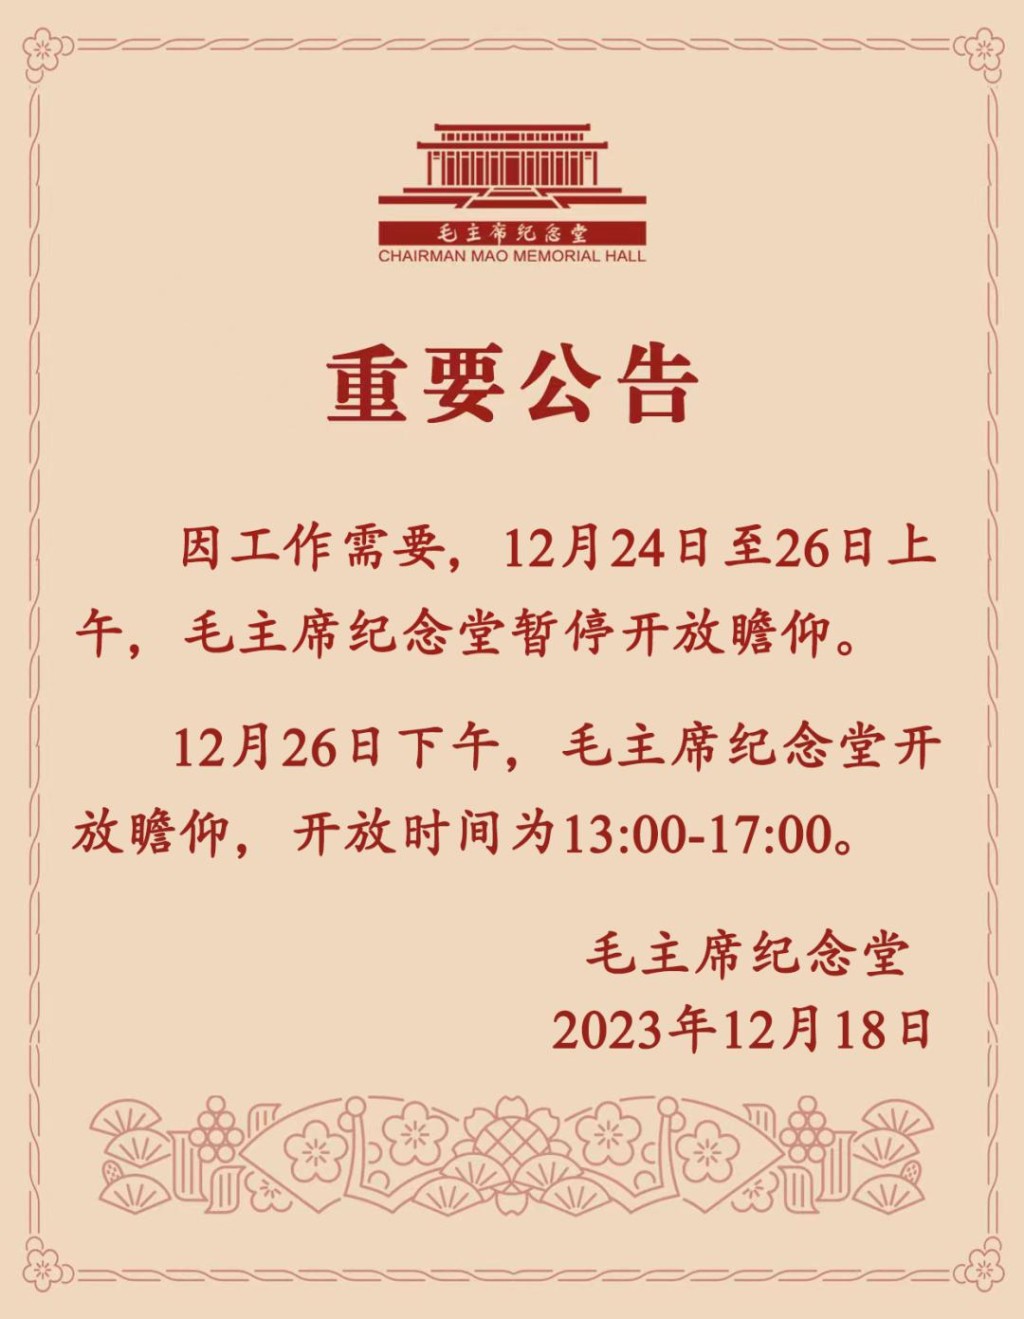 官方通报毛主席纪念堂将于12月24日至26日暂停开放。